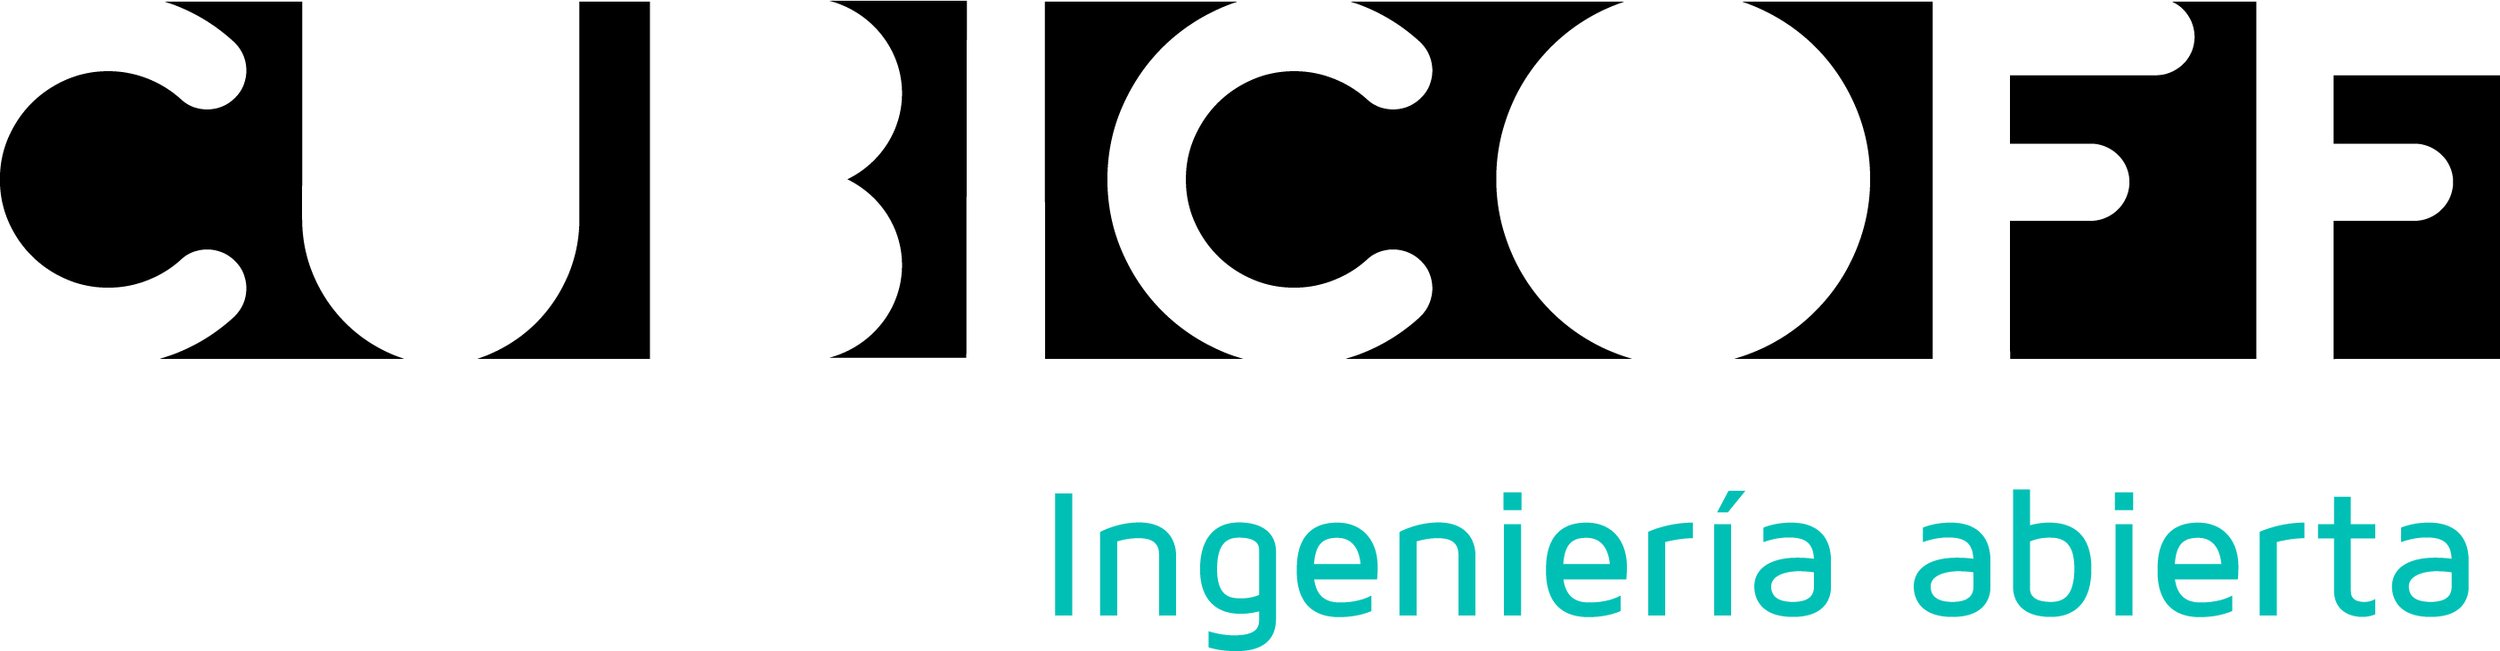 Logotipo Cubicoff con lema COLOR RGB.jpg